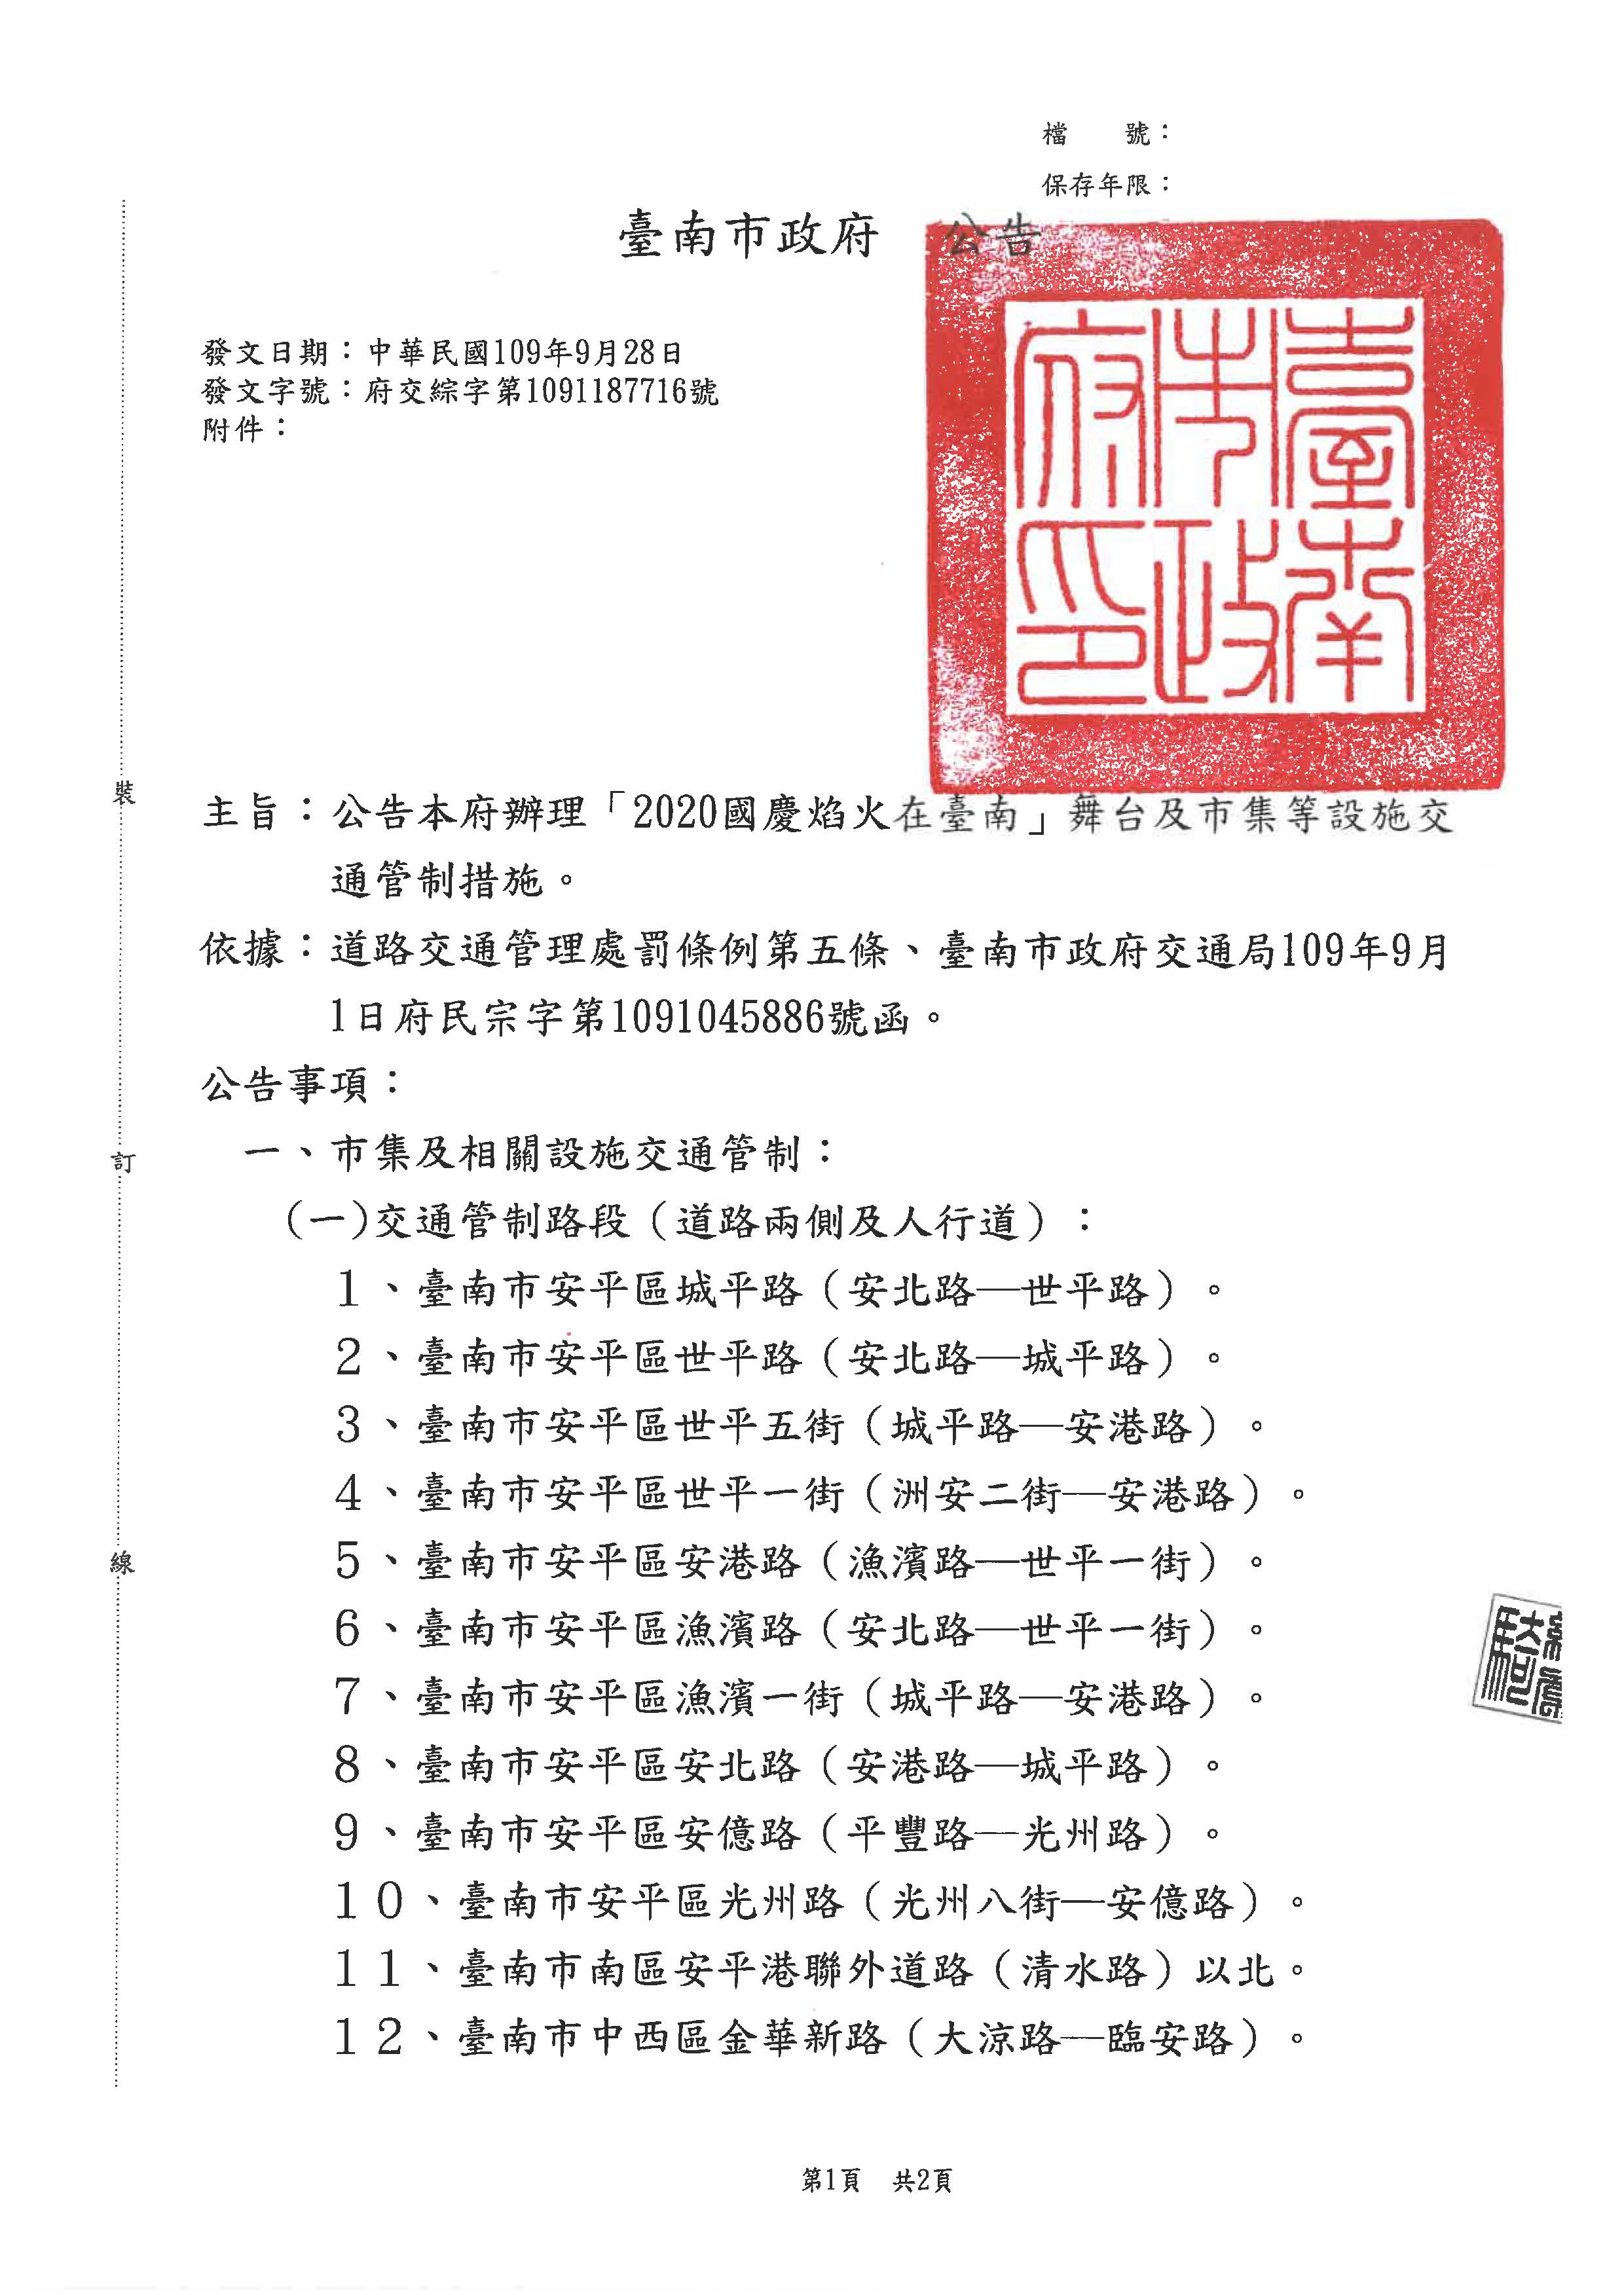 公告「2020國慶焰火在臺南」舞台及市集等設施交通管制措施頁面1